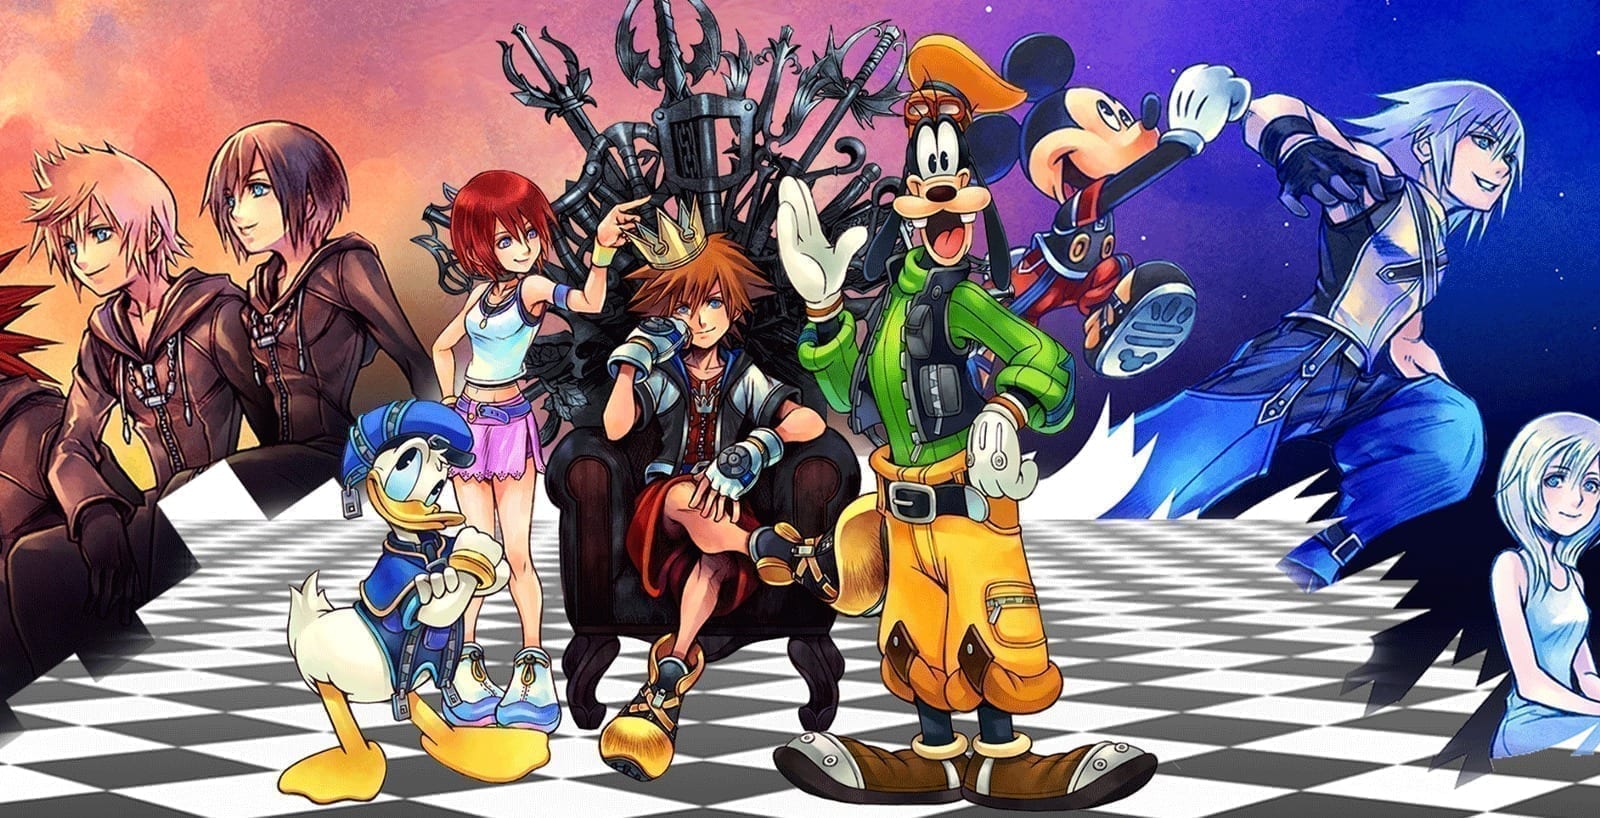 [Recenzja] Kingdom Hearts HD 1.5 + 2.5 Remix, tak zaczęła się legenda - część I